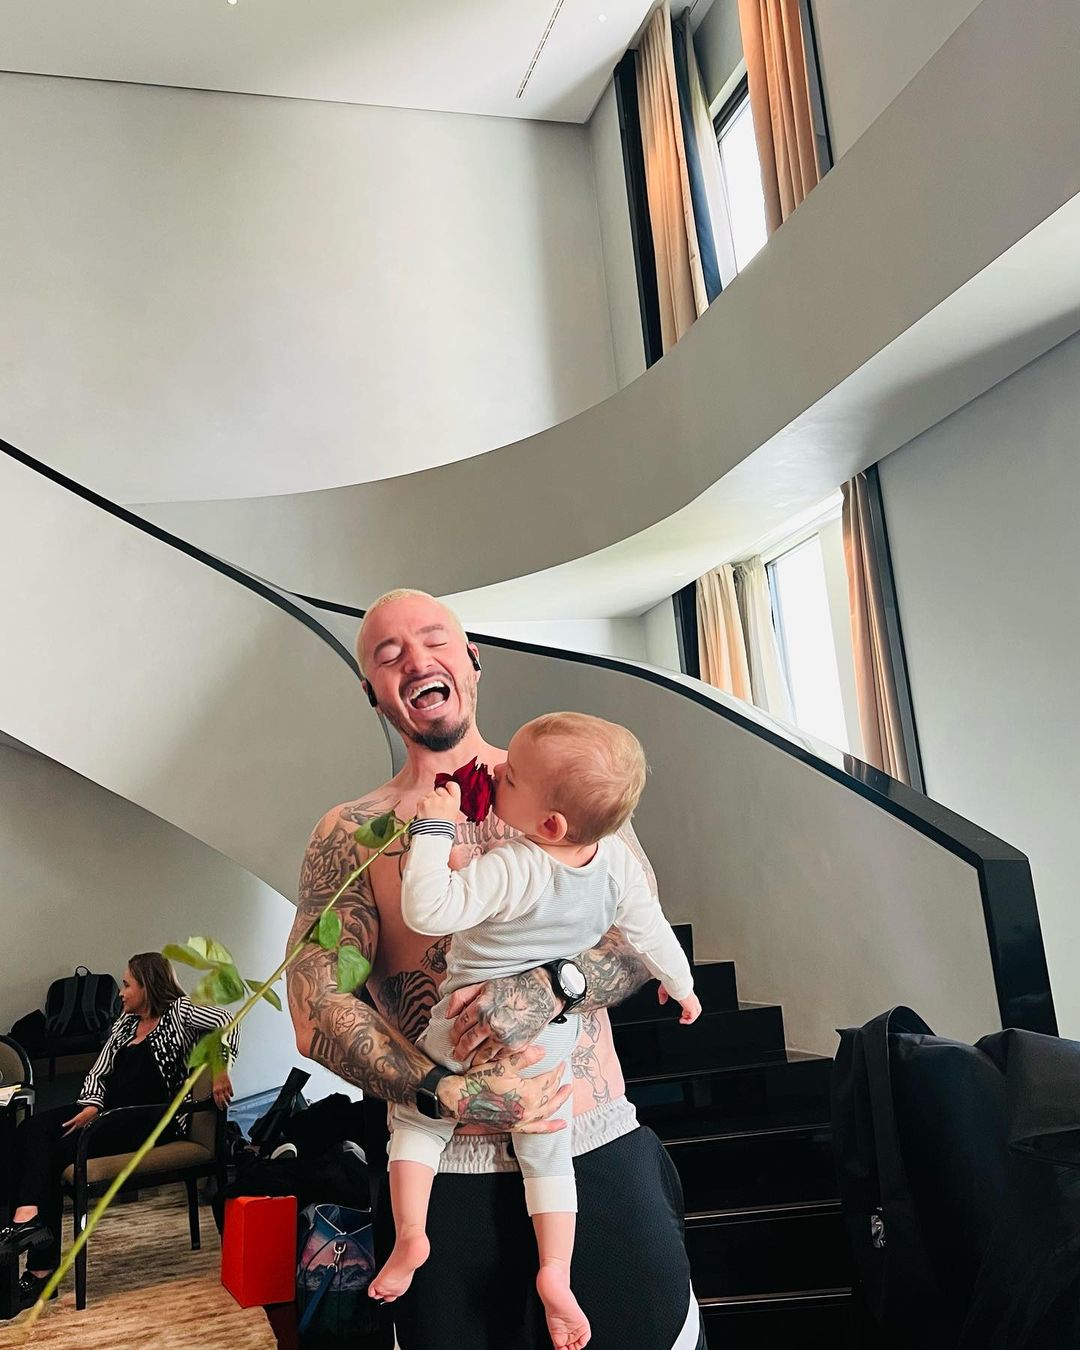 Segunda fotografía de Balvin alzando a Río. El cantante se reía a carcajadas mientras su bebé admiraba la belleza de una rosa. Instagram:@jbalvin